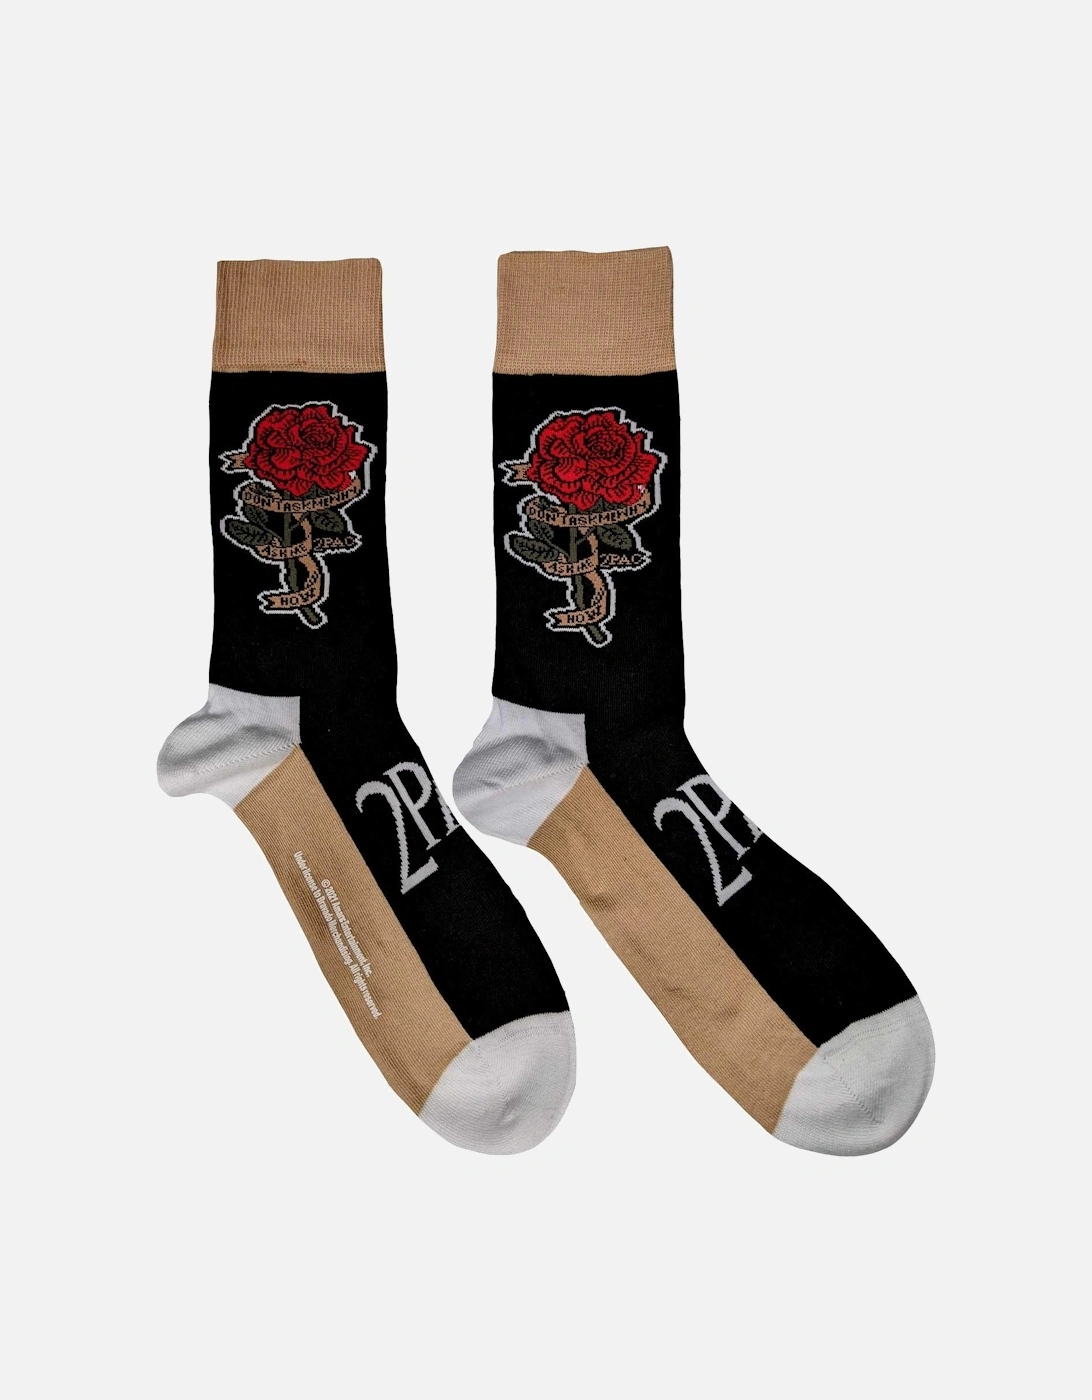 Unisex Adult Rose Ankle Socks, 3 of 2